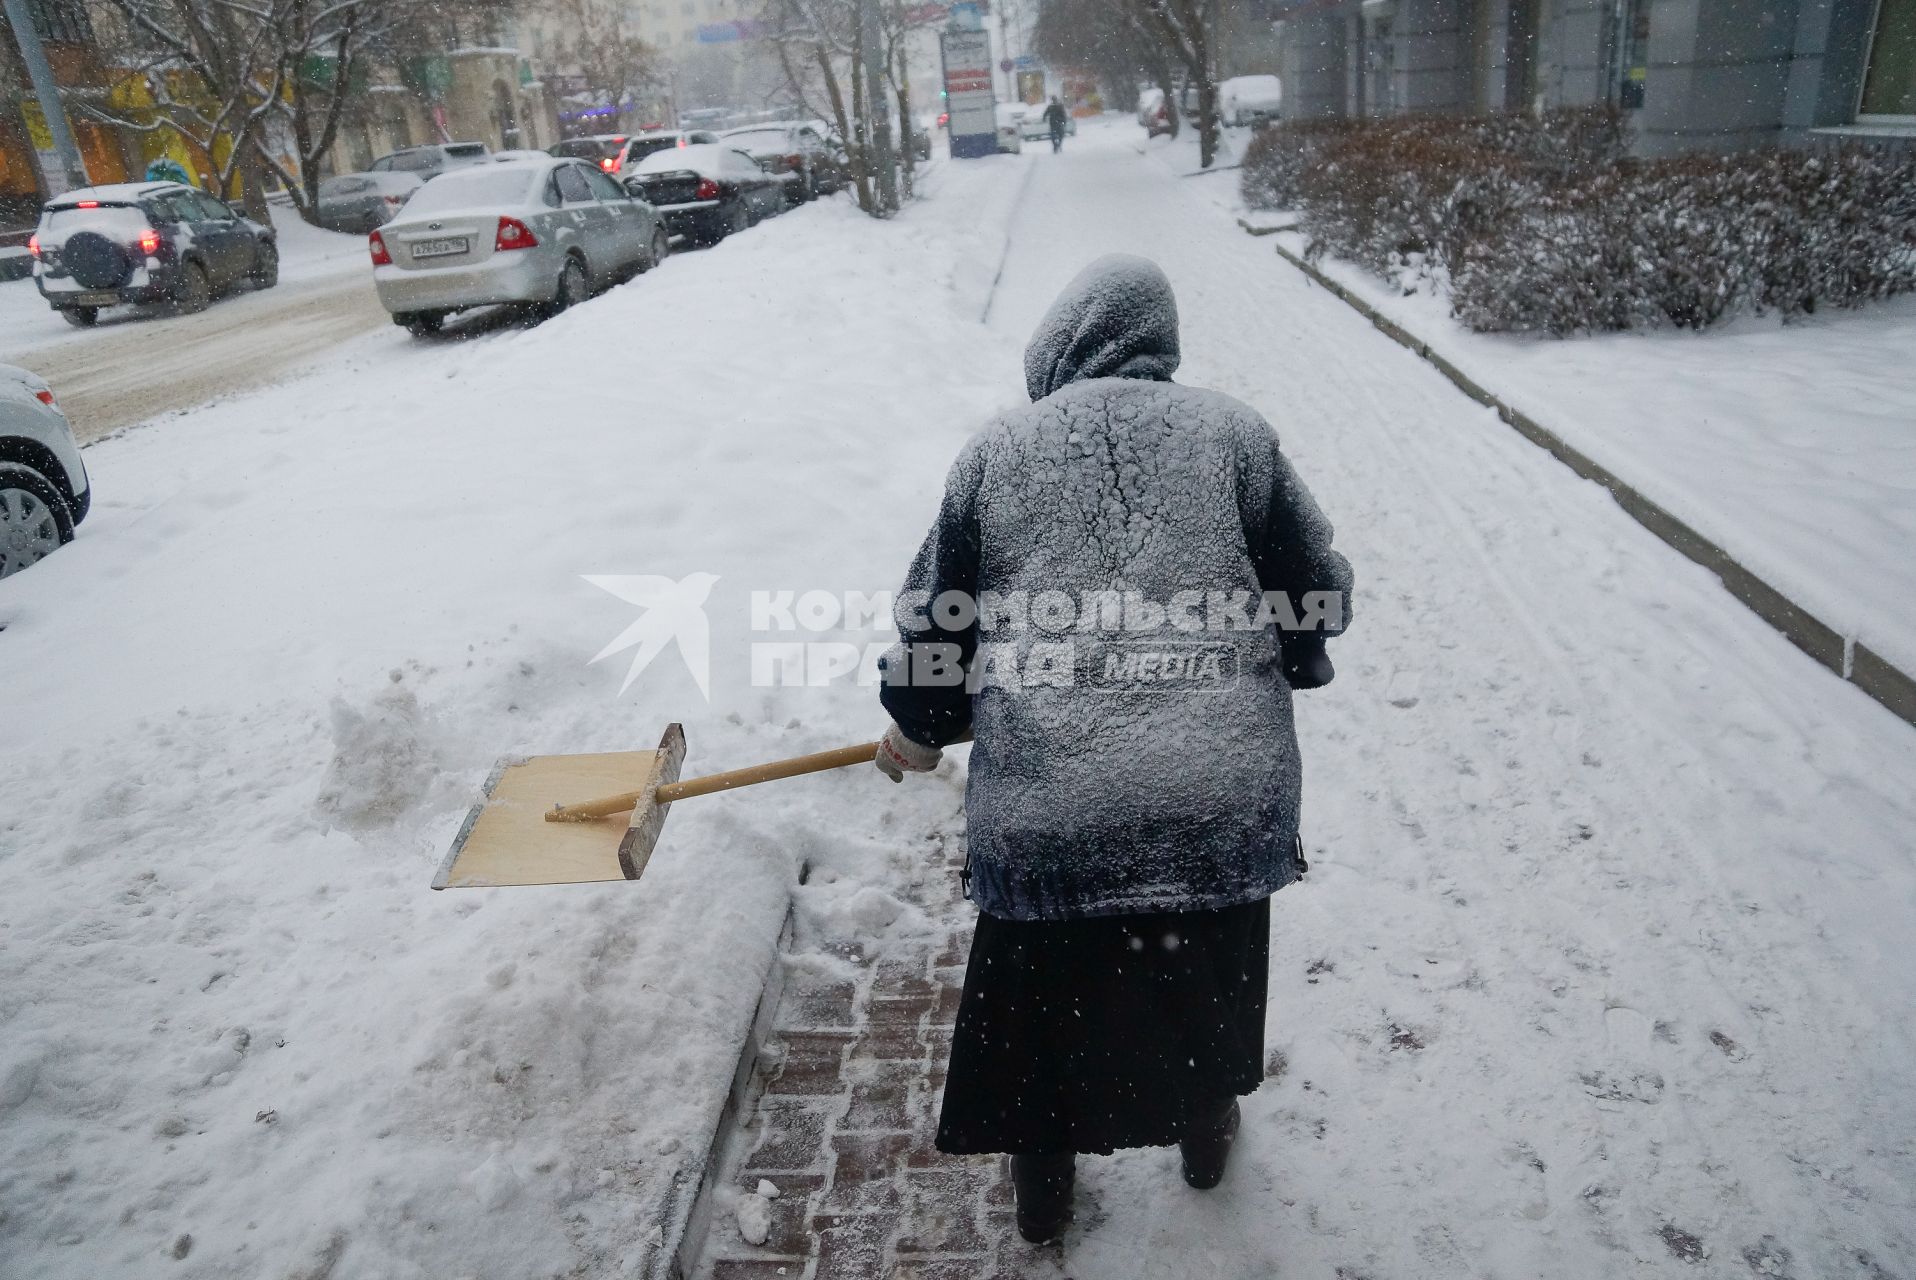 Снегопад в Екатеринбурге. На снимке: женщина убирает снег с пешеходной зоны деревянной лопатой.